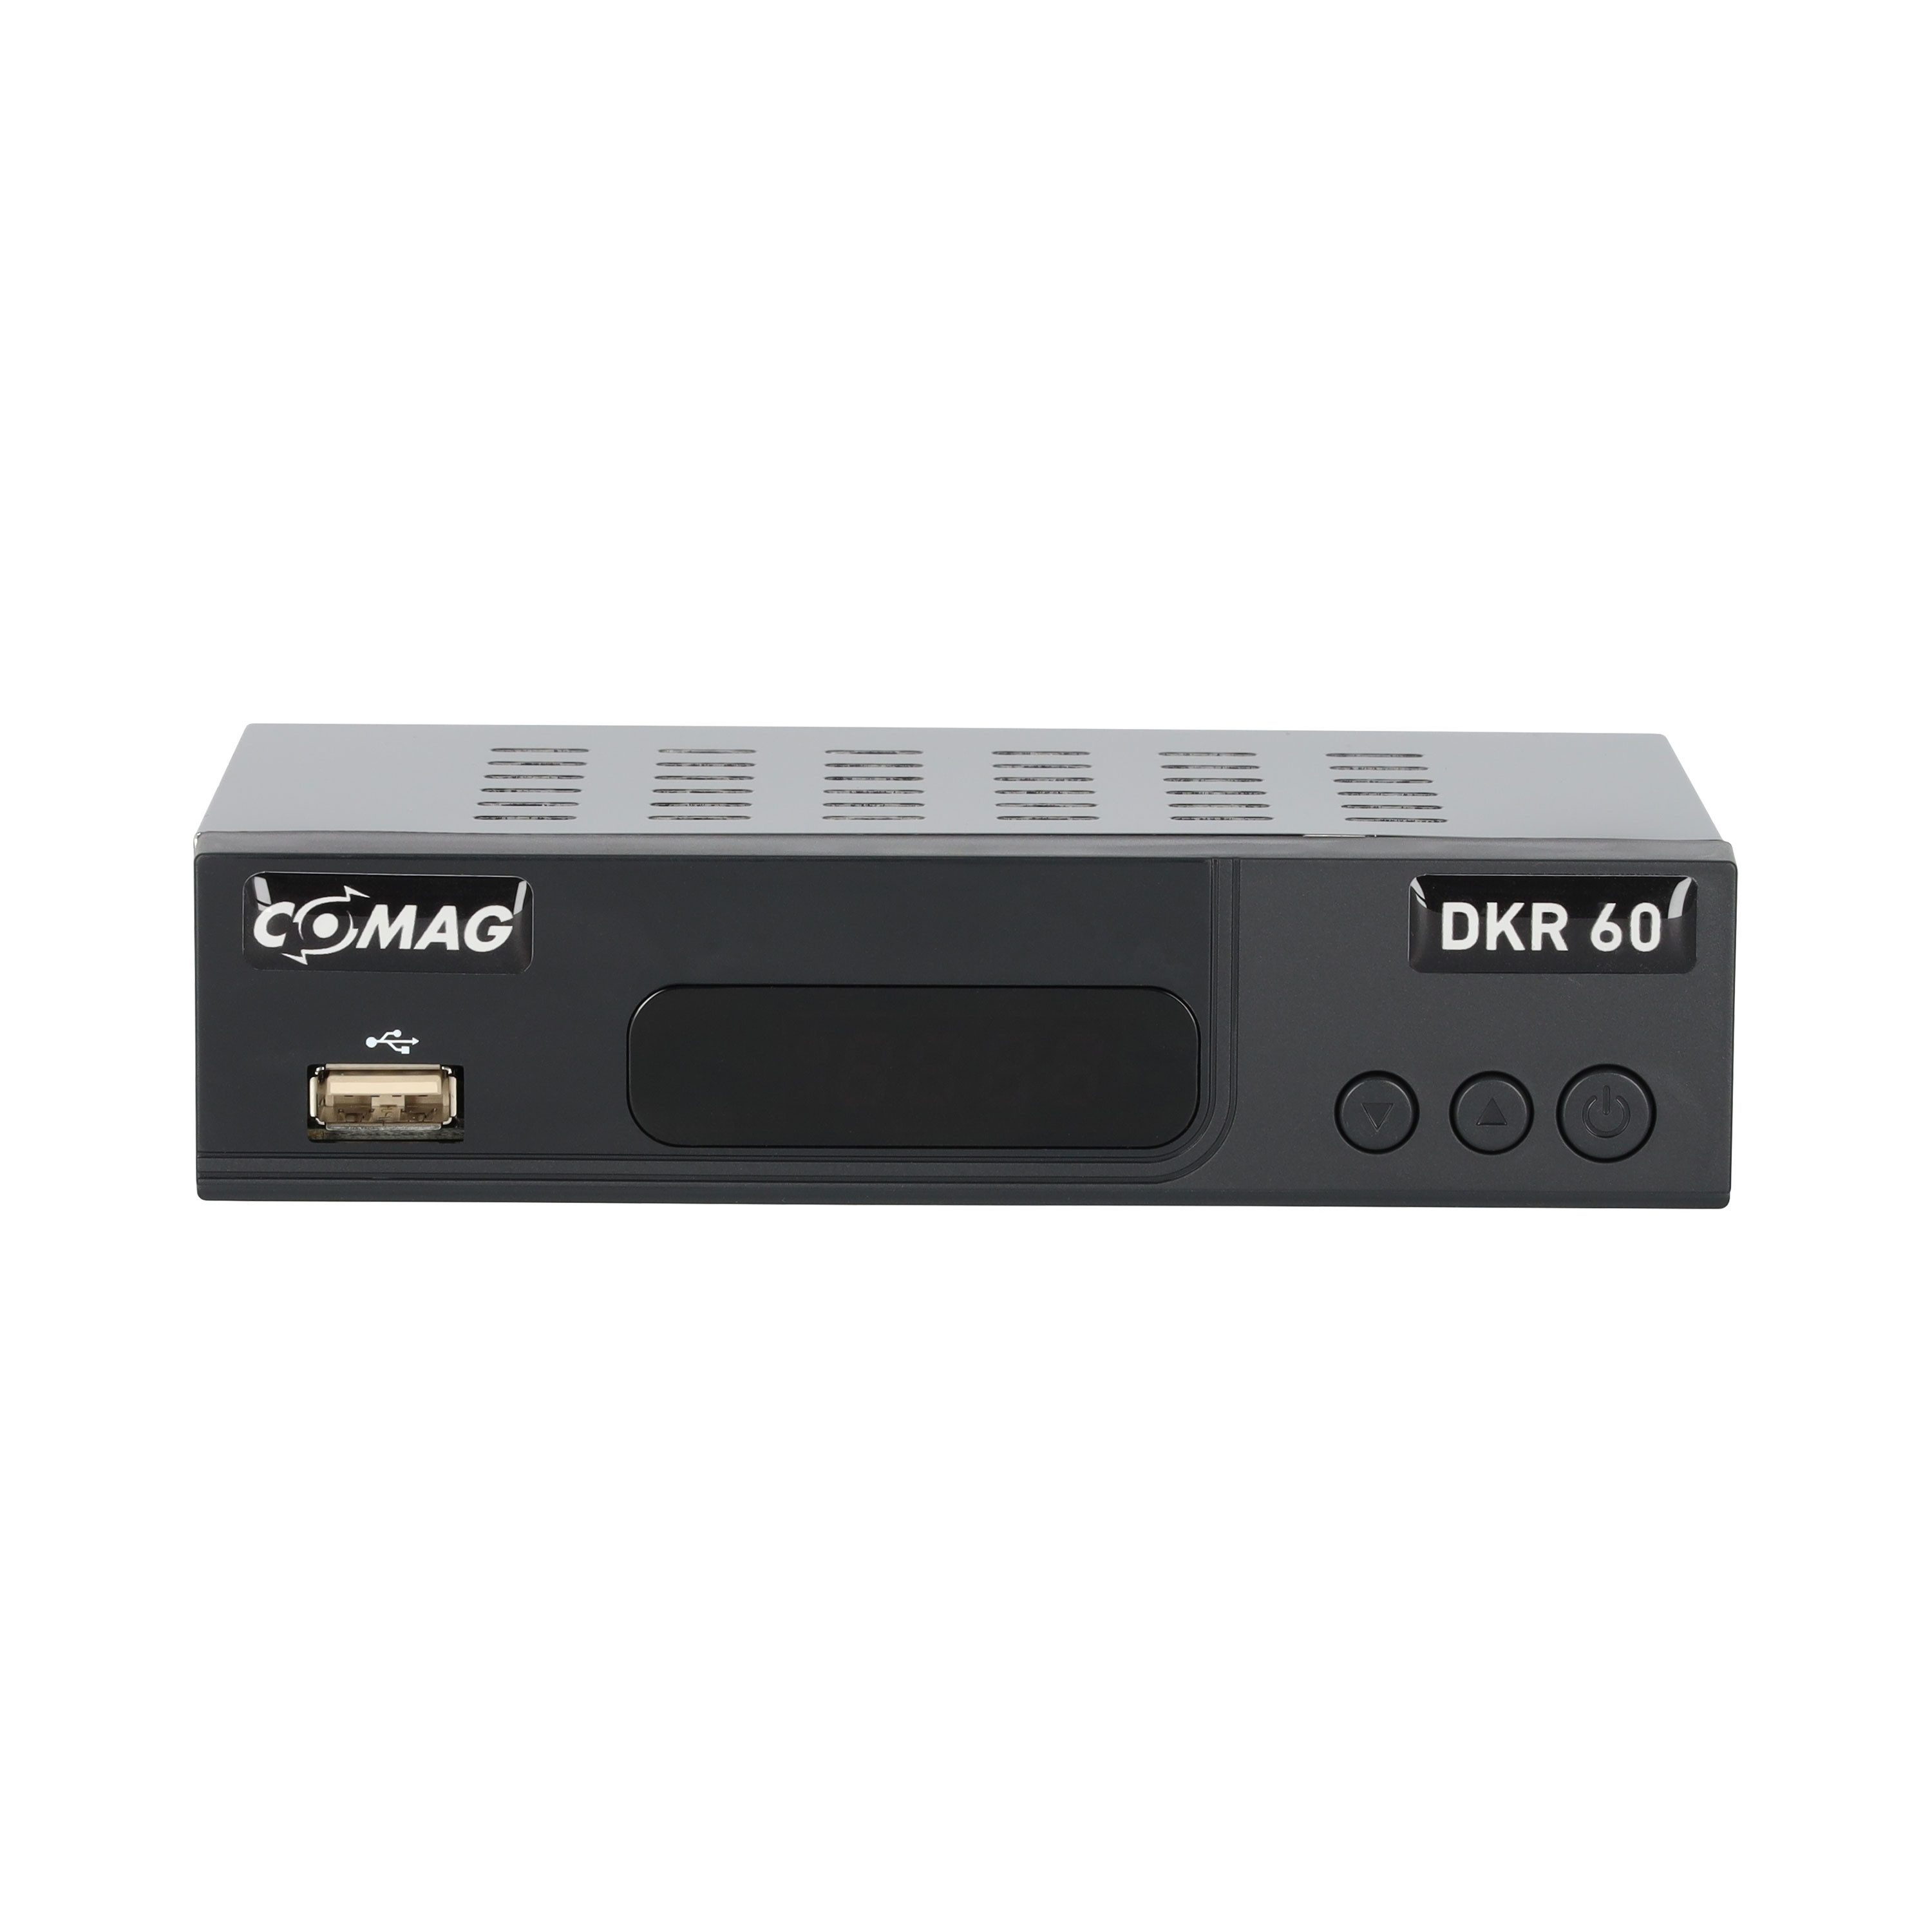 Comag DKR 60 HD Kabel-Receiver (1080p Full HD, PVR Funktion)